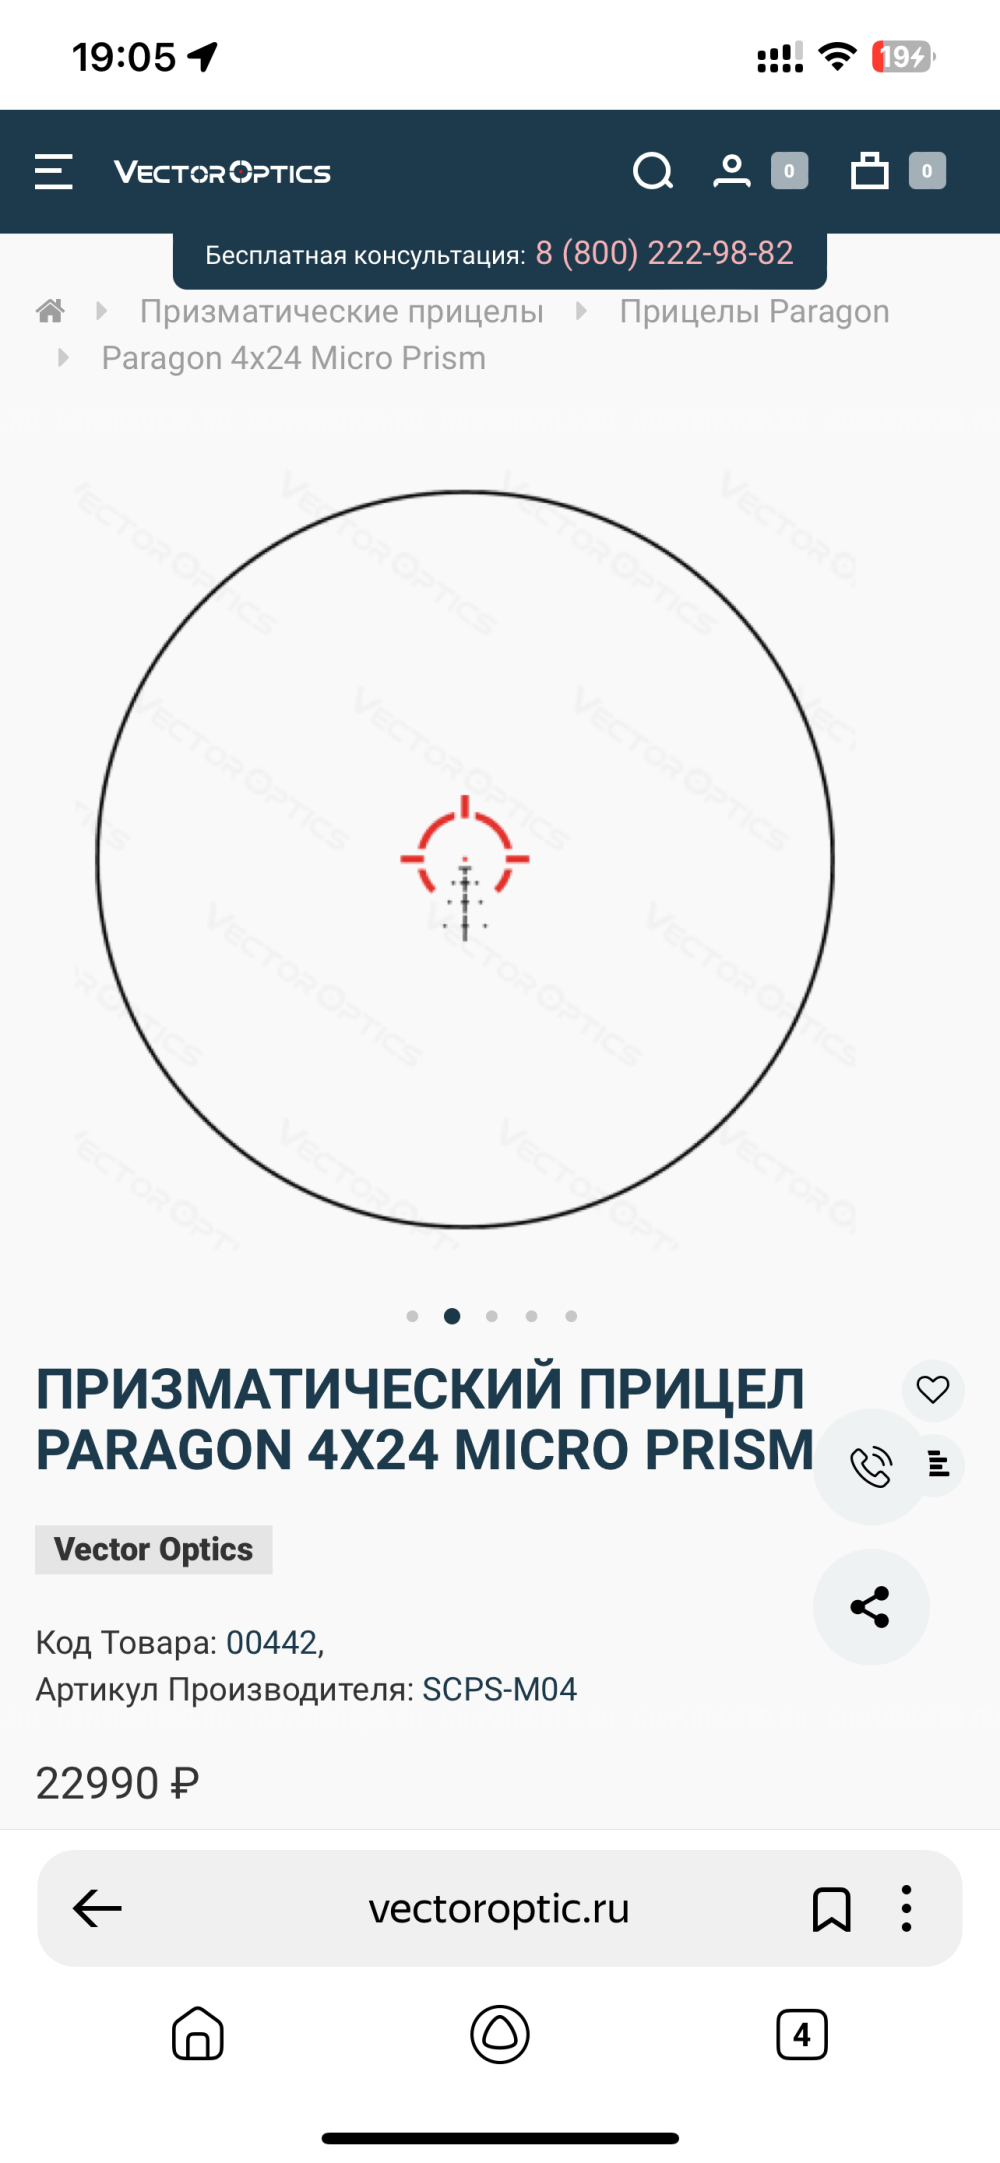 ПРИЗМАТИЧЕСКИЙ ПРИЦЕЛ PARAGON 4X24 MICRO PRISM